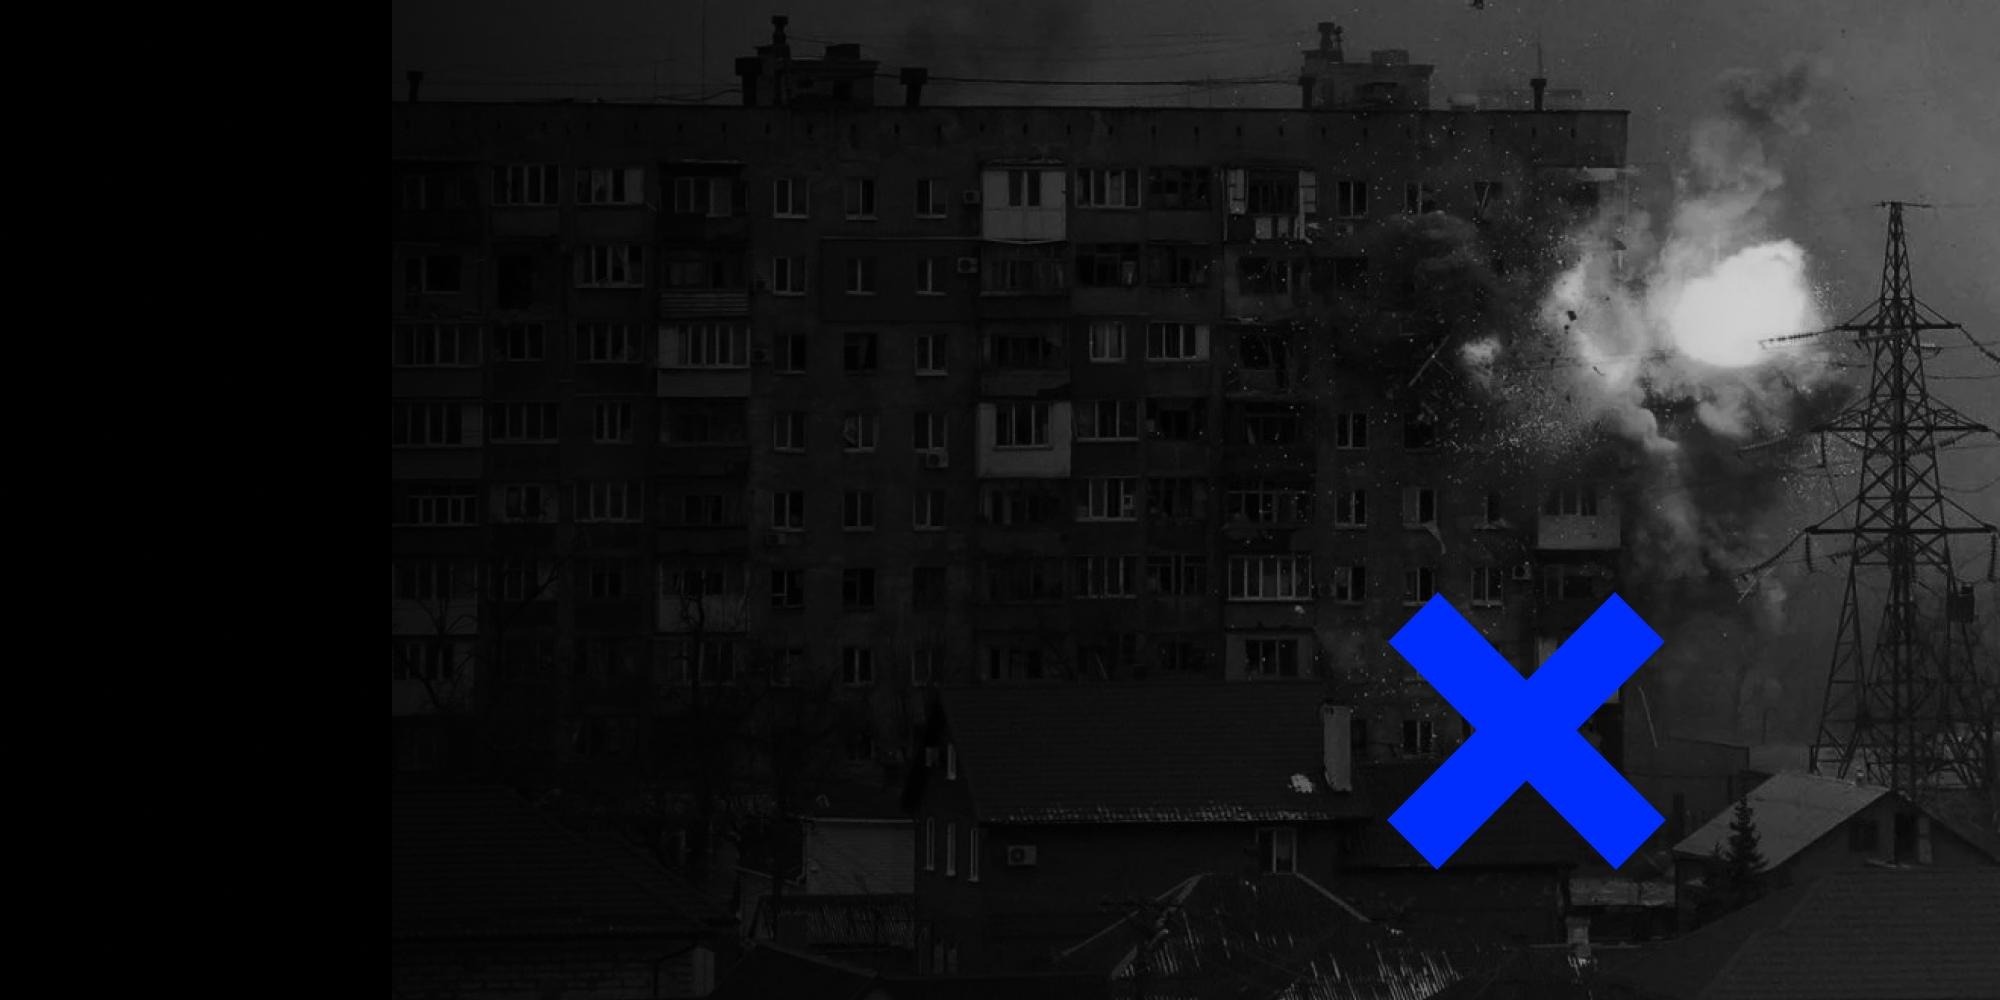 ВІДЕОФЕЙК: У 2014 році Богдан Буткевич закликав знищити 1,5 млн населення на Донбасі